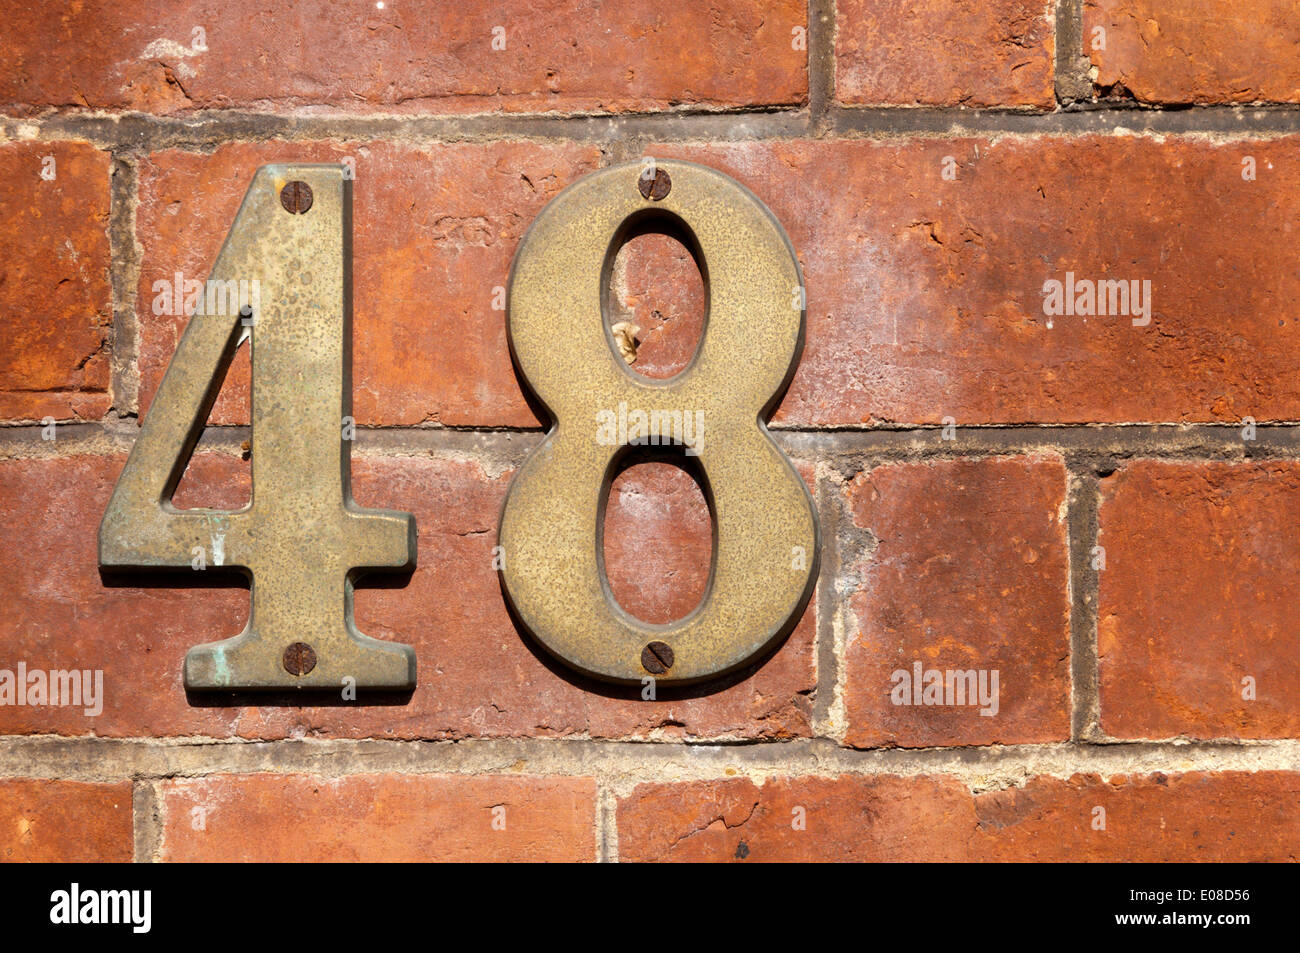 El número 48 de metal fijado a una pared de ladrillo. Foto de stock